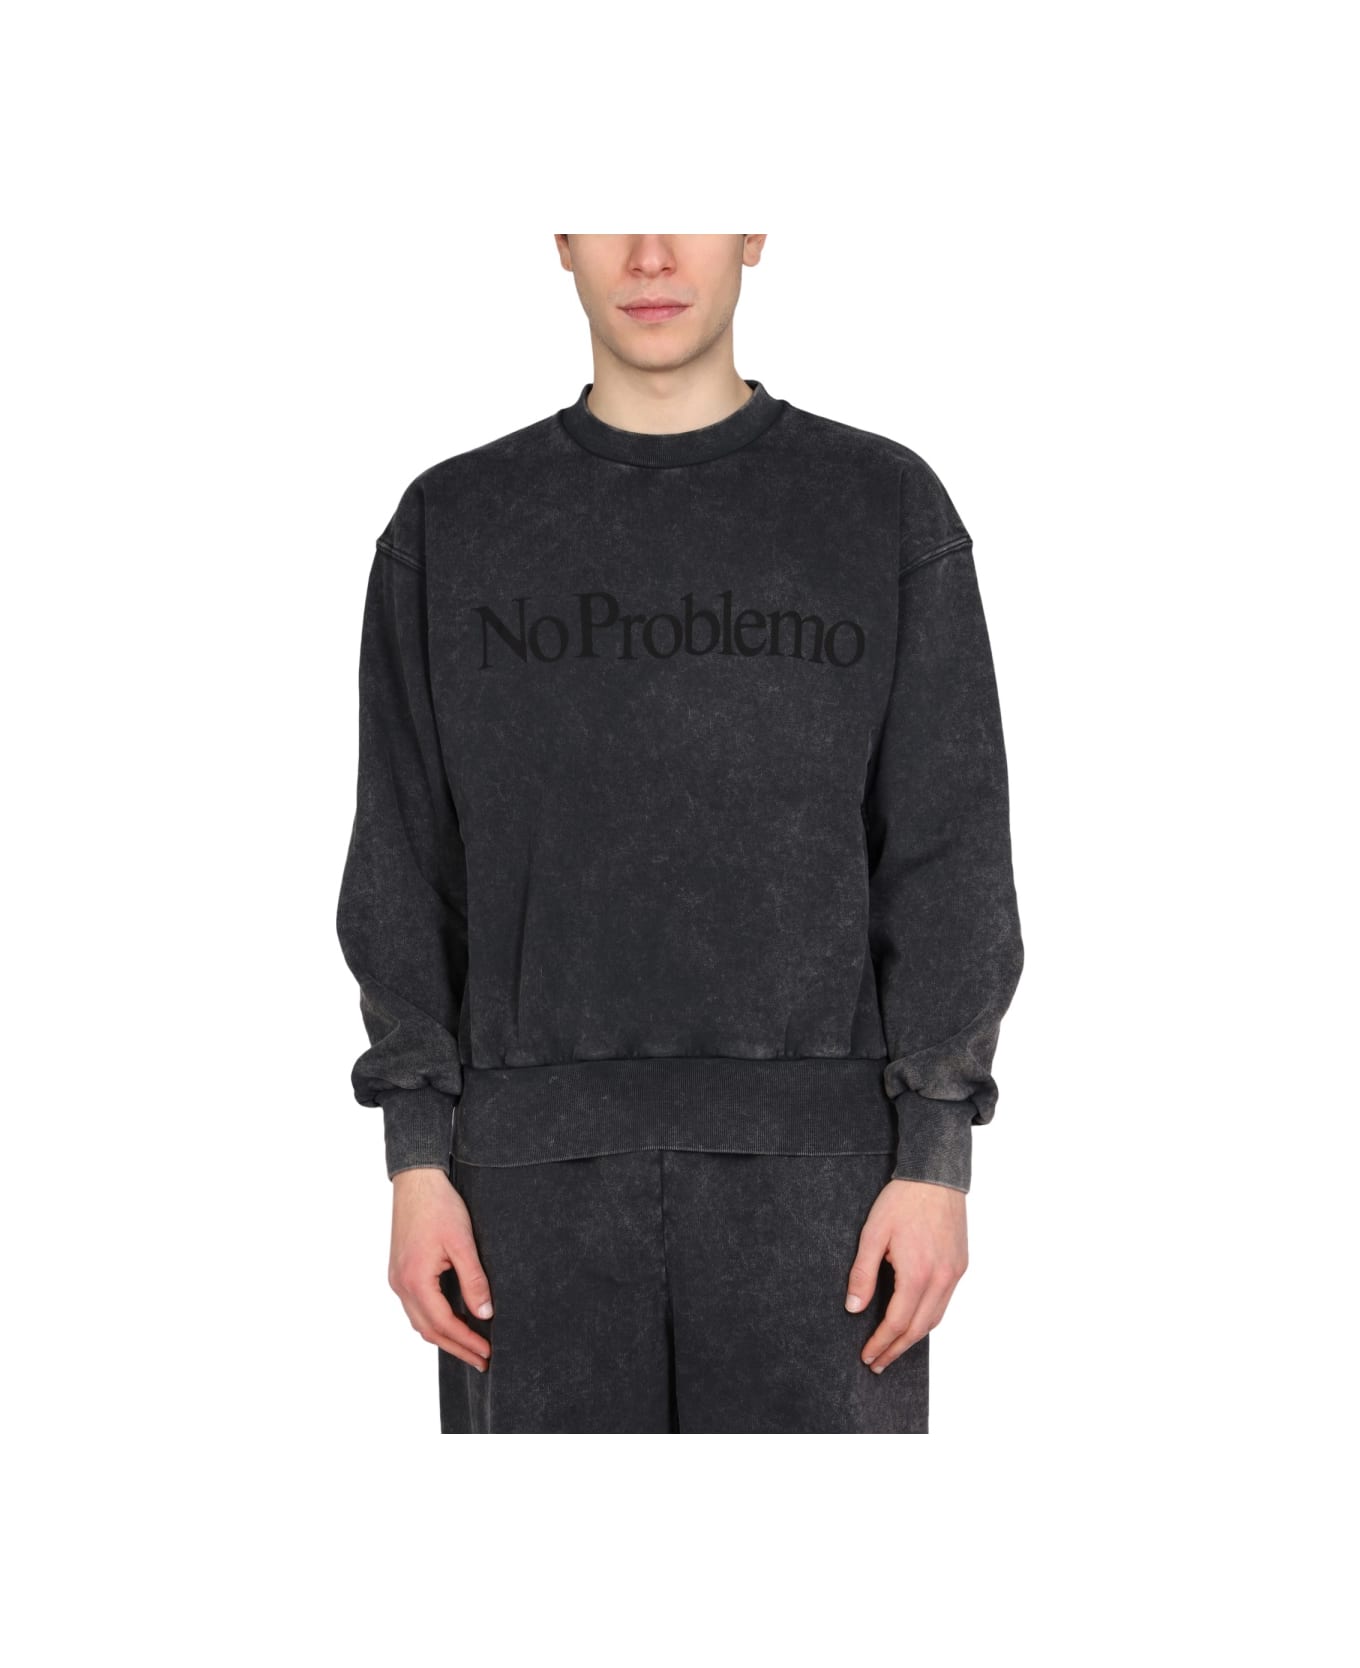 Aries "no Problemo" Print Sweatshirt - BLACK